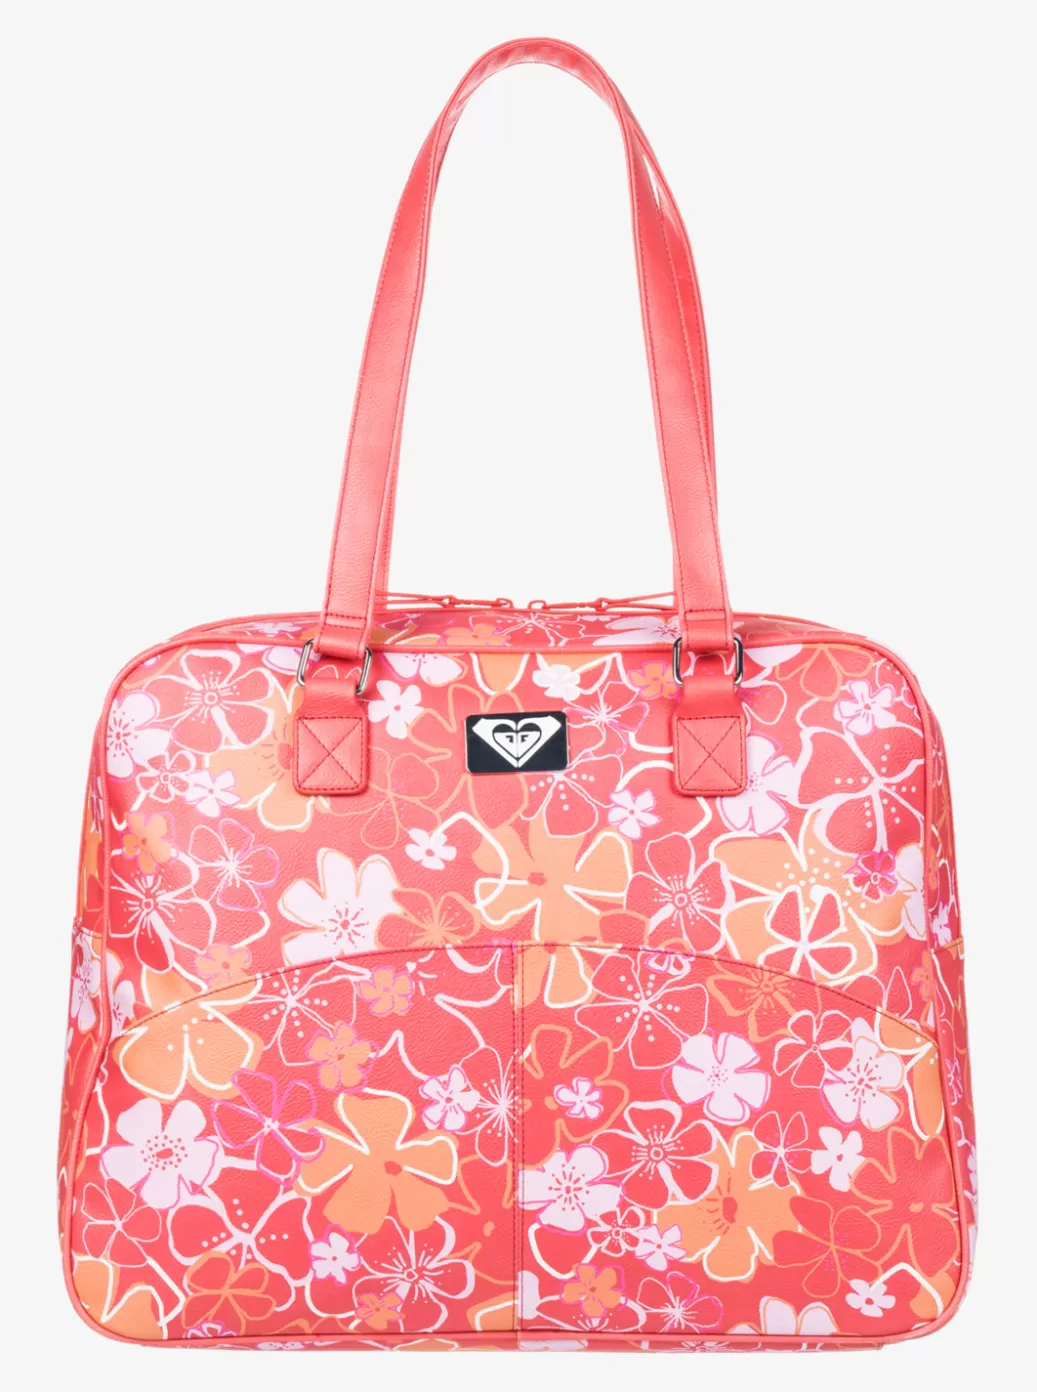 Other Accessories | Handbags | WOMEN ROXY Ocean Mood Duffle Bag Bittersweet Meadow Flowers